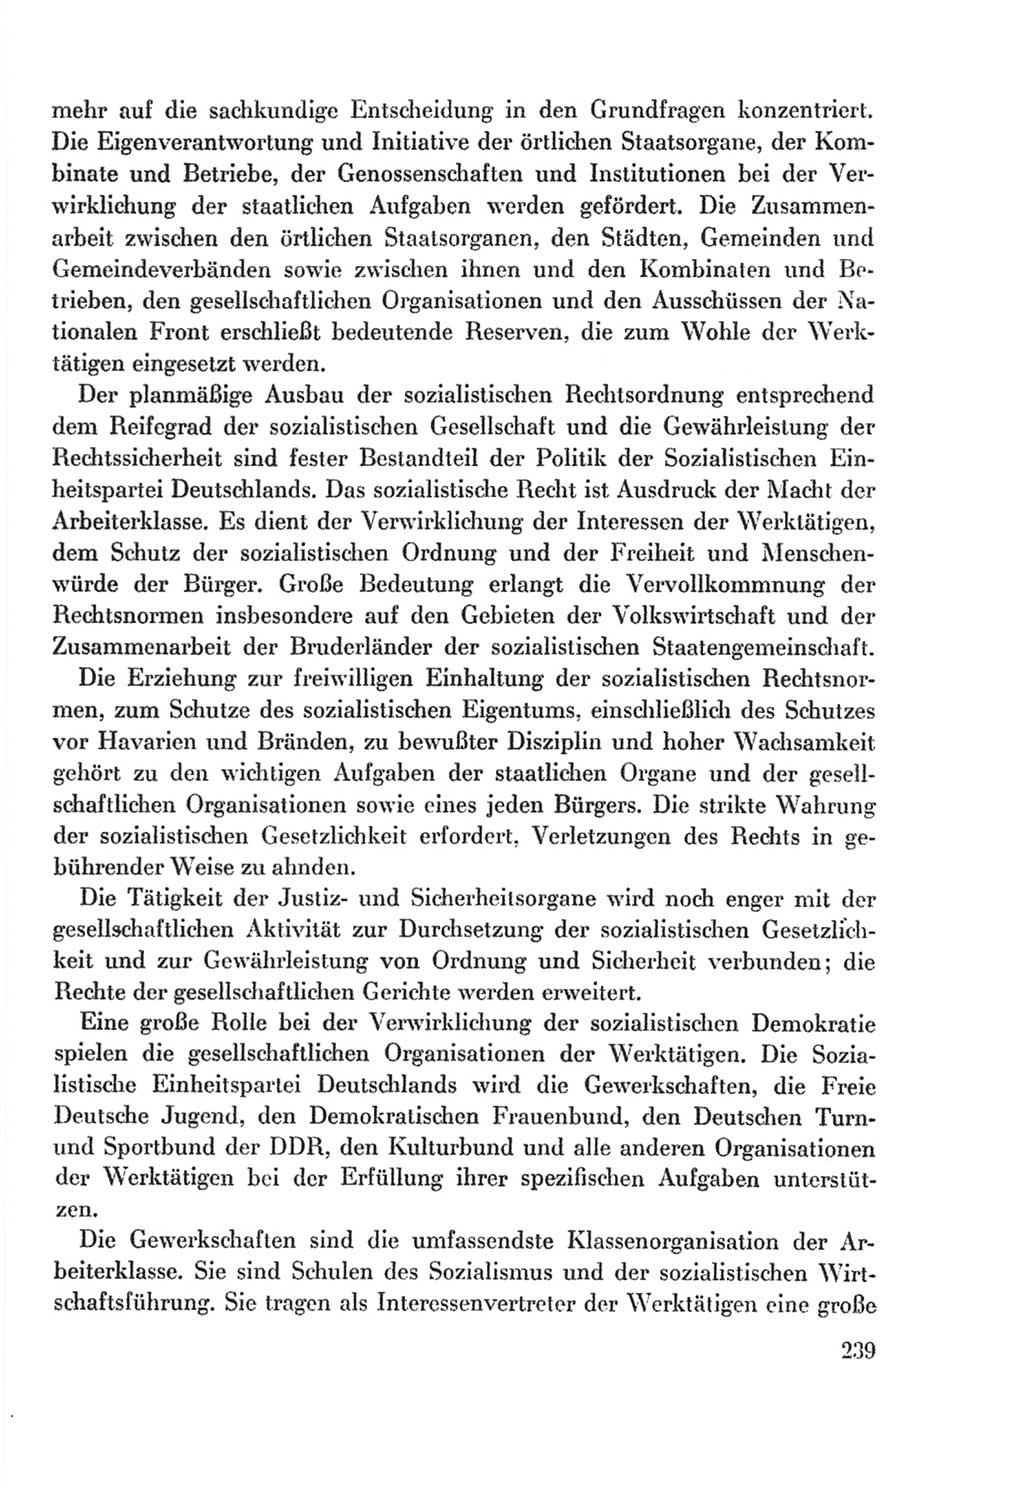 Protokoll der Verhandlungen des Ⅸ. Parteitages der Sozialistischen Einheitspartei Deutschlands (SED) [Deutsche Demokratische Republik (DDR)] 1976, Band 2, Seite 239 (Prot. Verh. Ⅸ. PT SED DDR 1976, Bd. 2, S. 239)